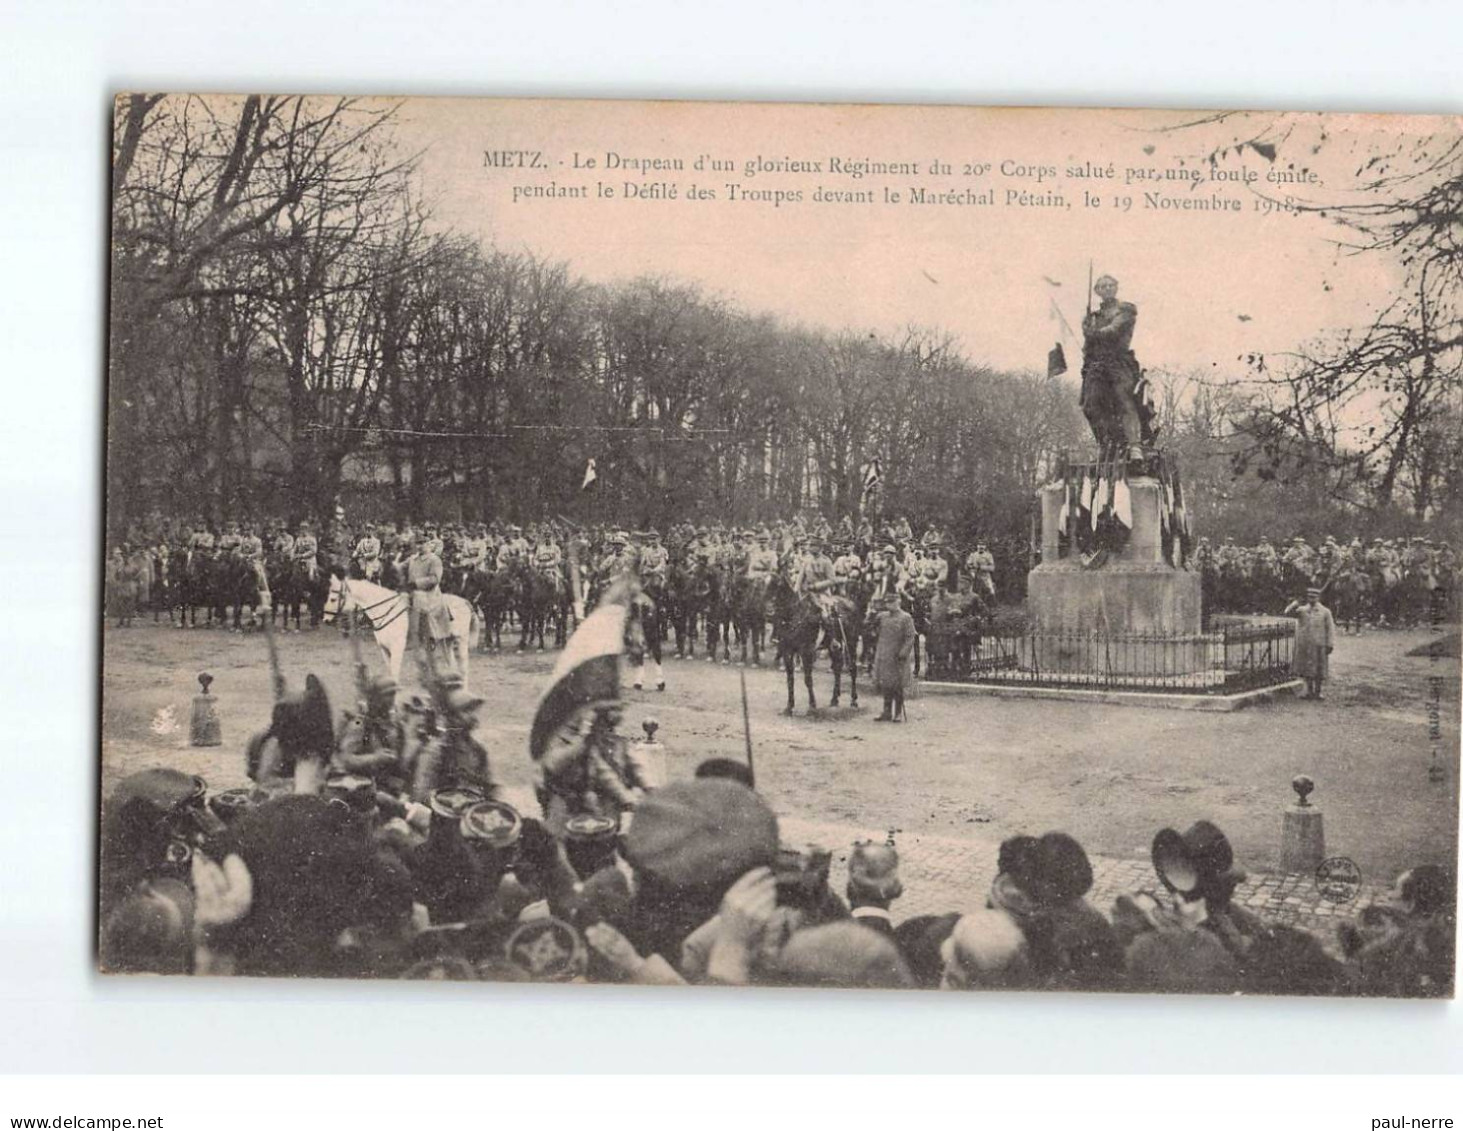 METZ : Le Drapeau D'un Glorieux Régiment Du 20e Corps, Salué Par Une Foule Pendant Les Défilé En 1918 - Très Bon état - Metz Campagne